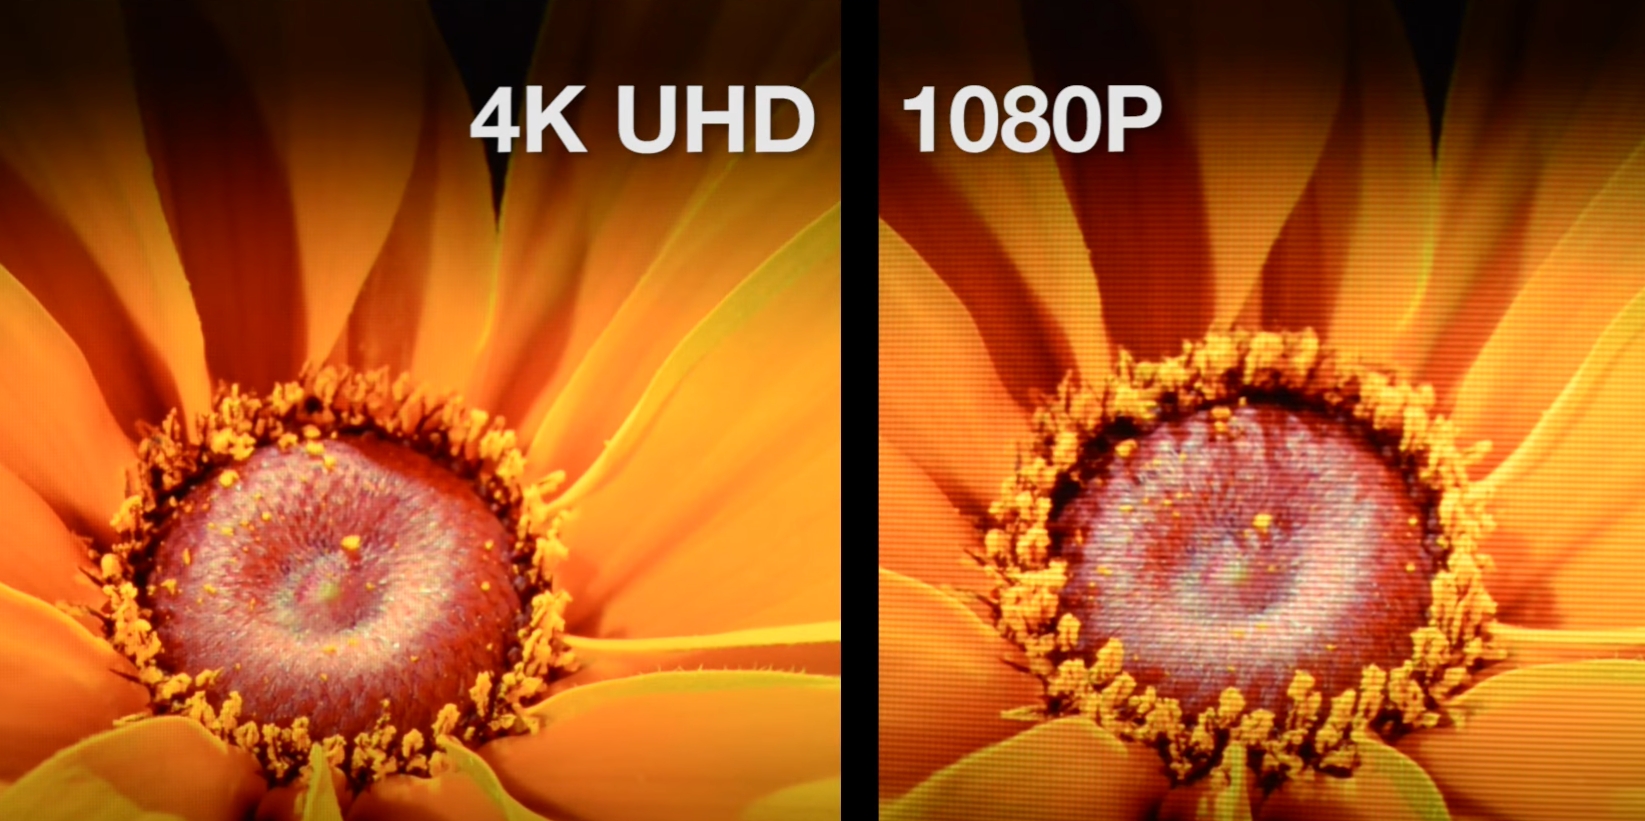 4k-vs-1080p